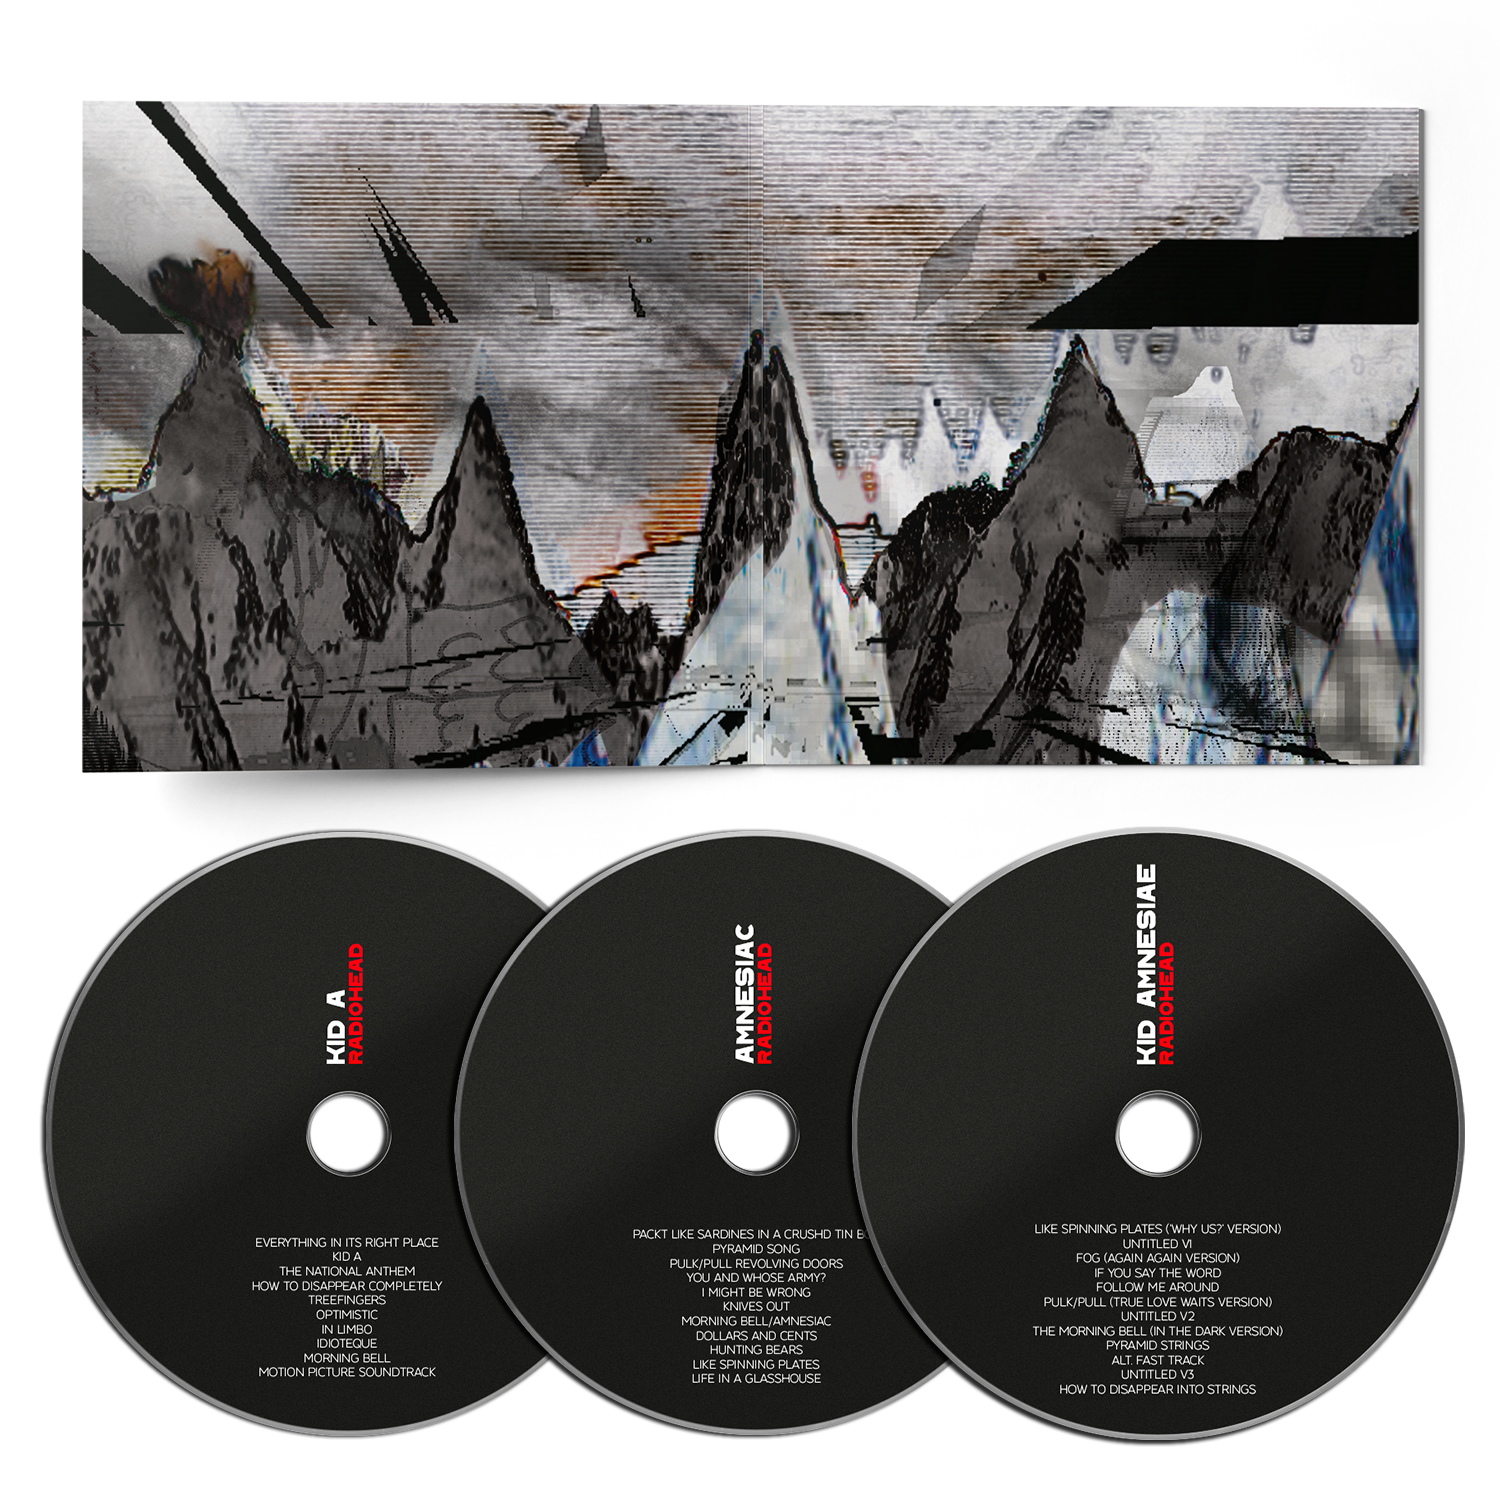 Radiohead - KID A MNESIA: 3CD